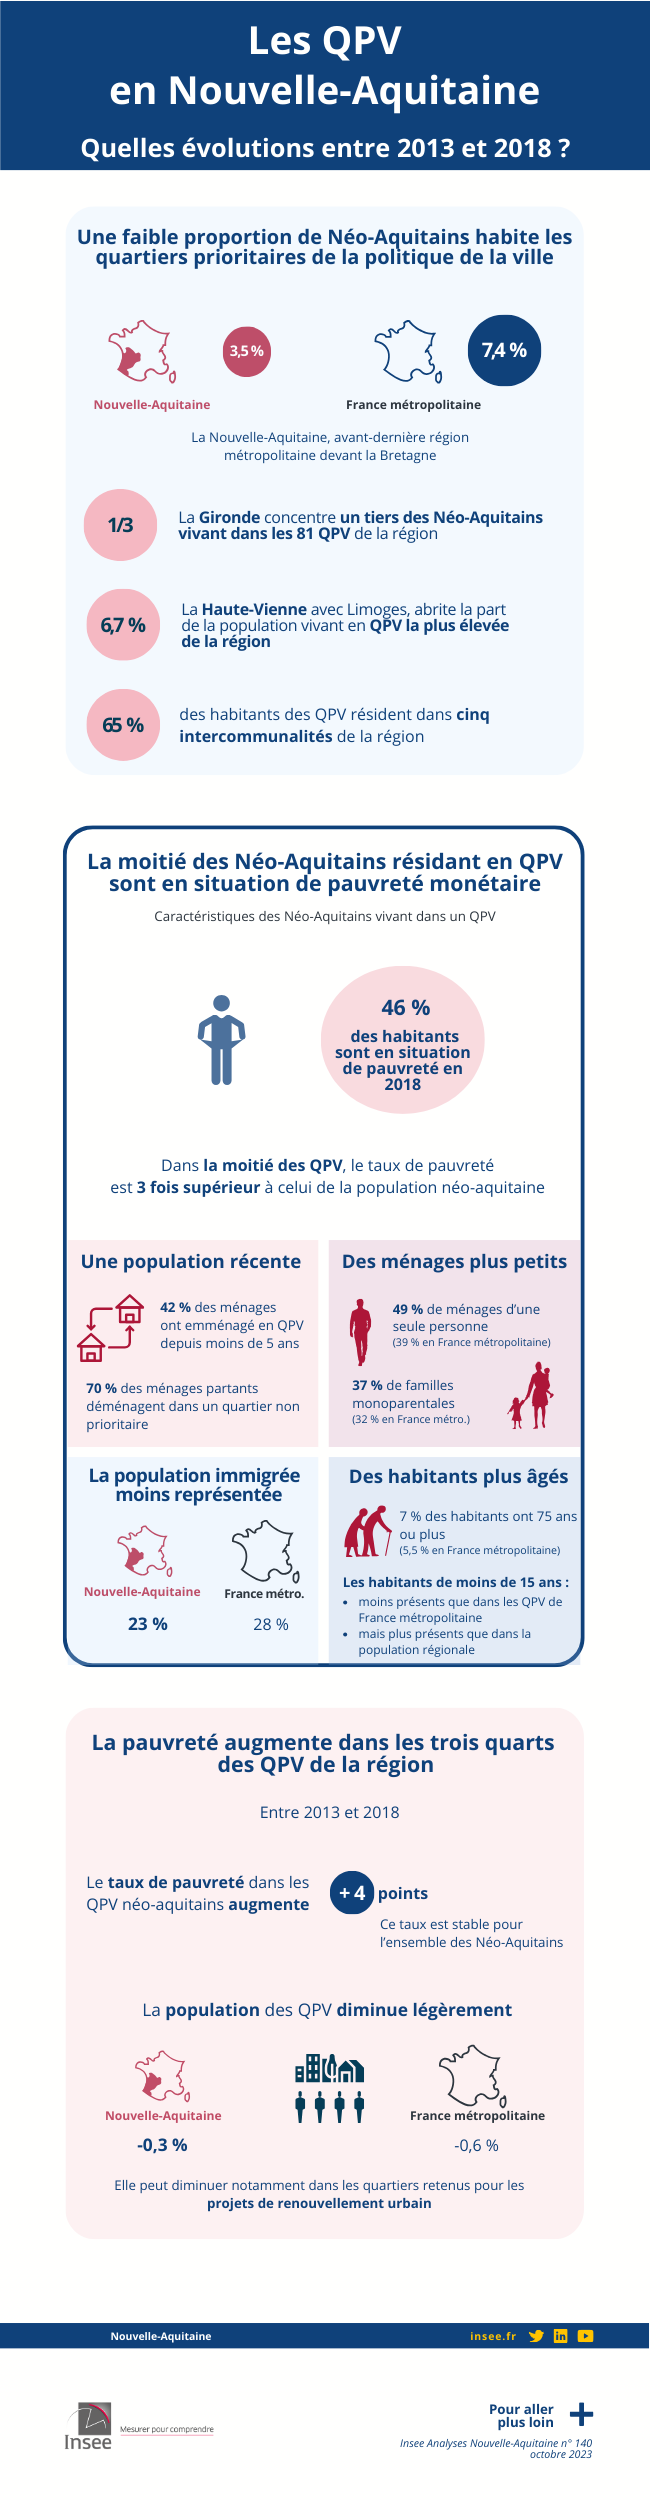 Une diversité de situations, la pauvreté en commun - Les QPV en Nouvelle-Aquitaine.